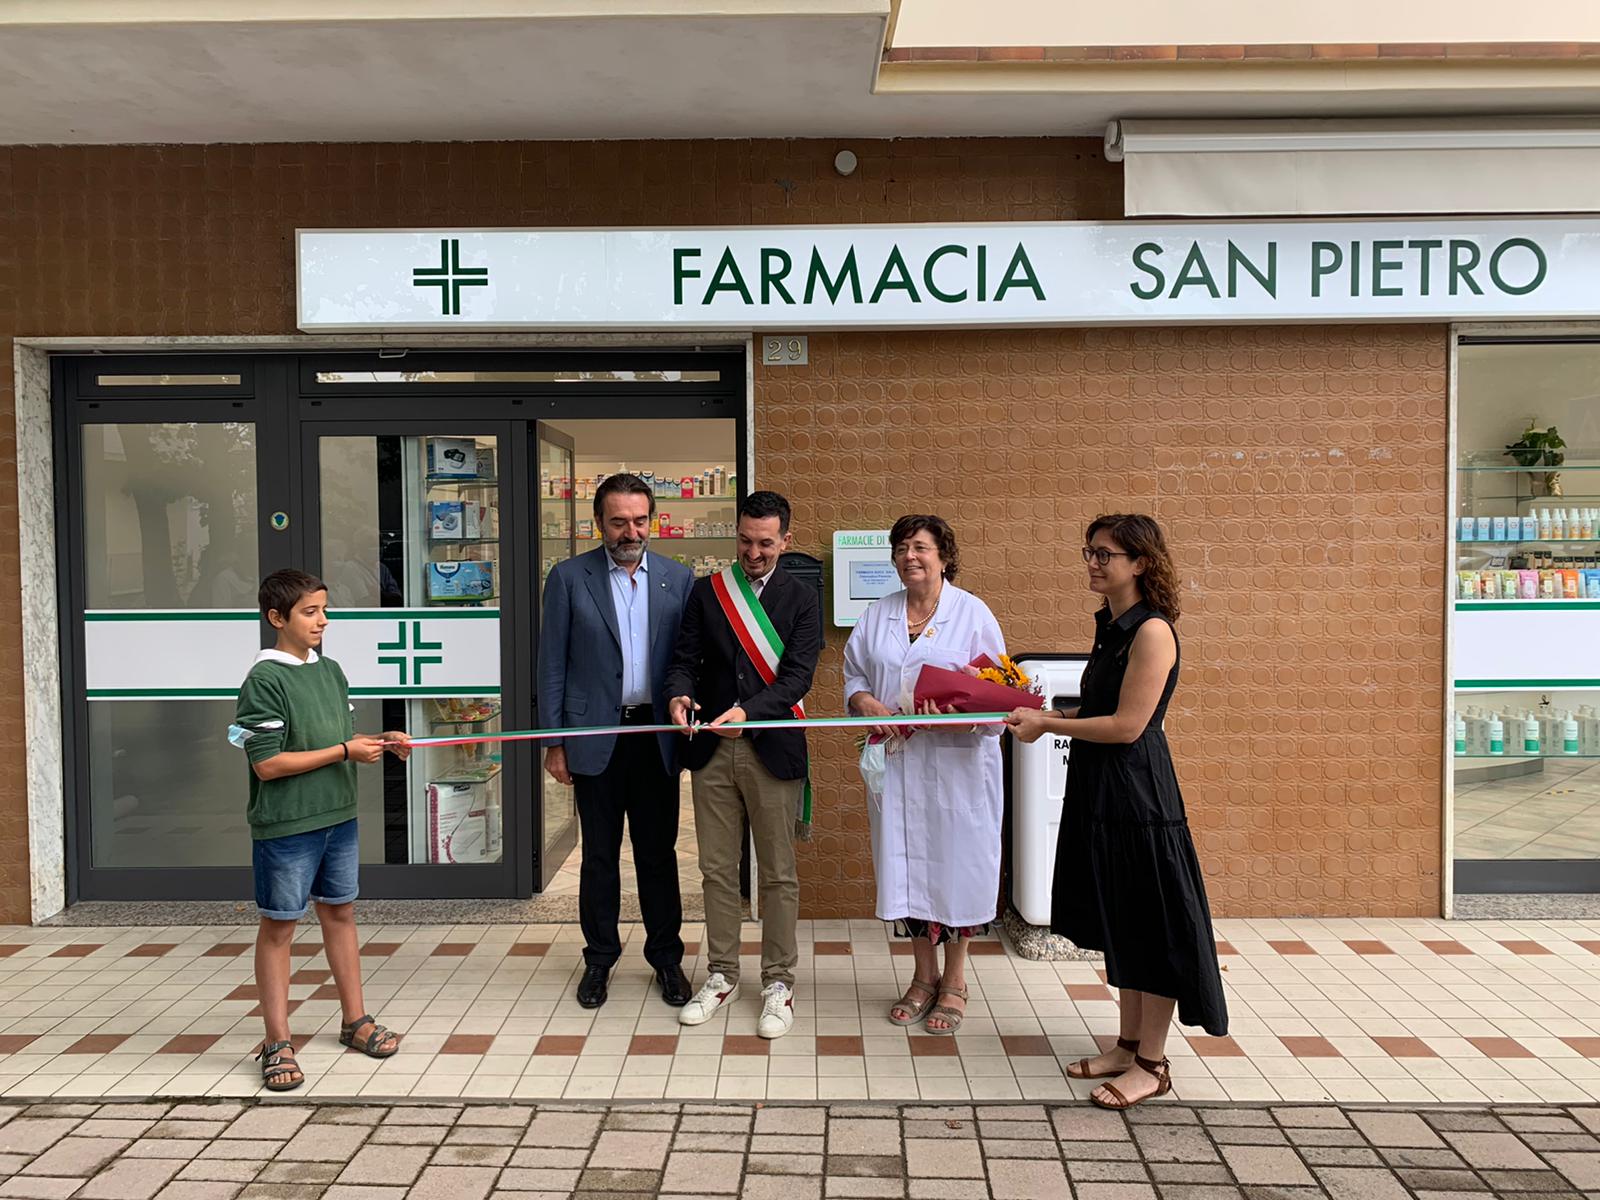 A Ponente ha aperto la nuova farmacia “San Pietro” foto 